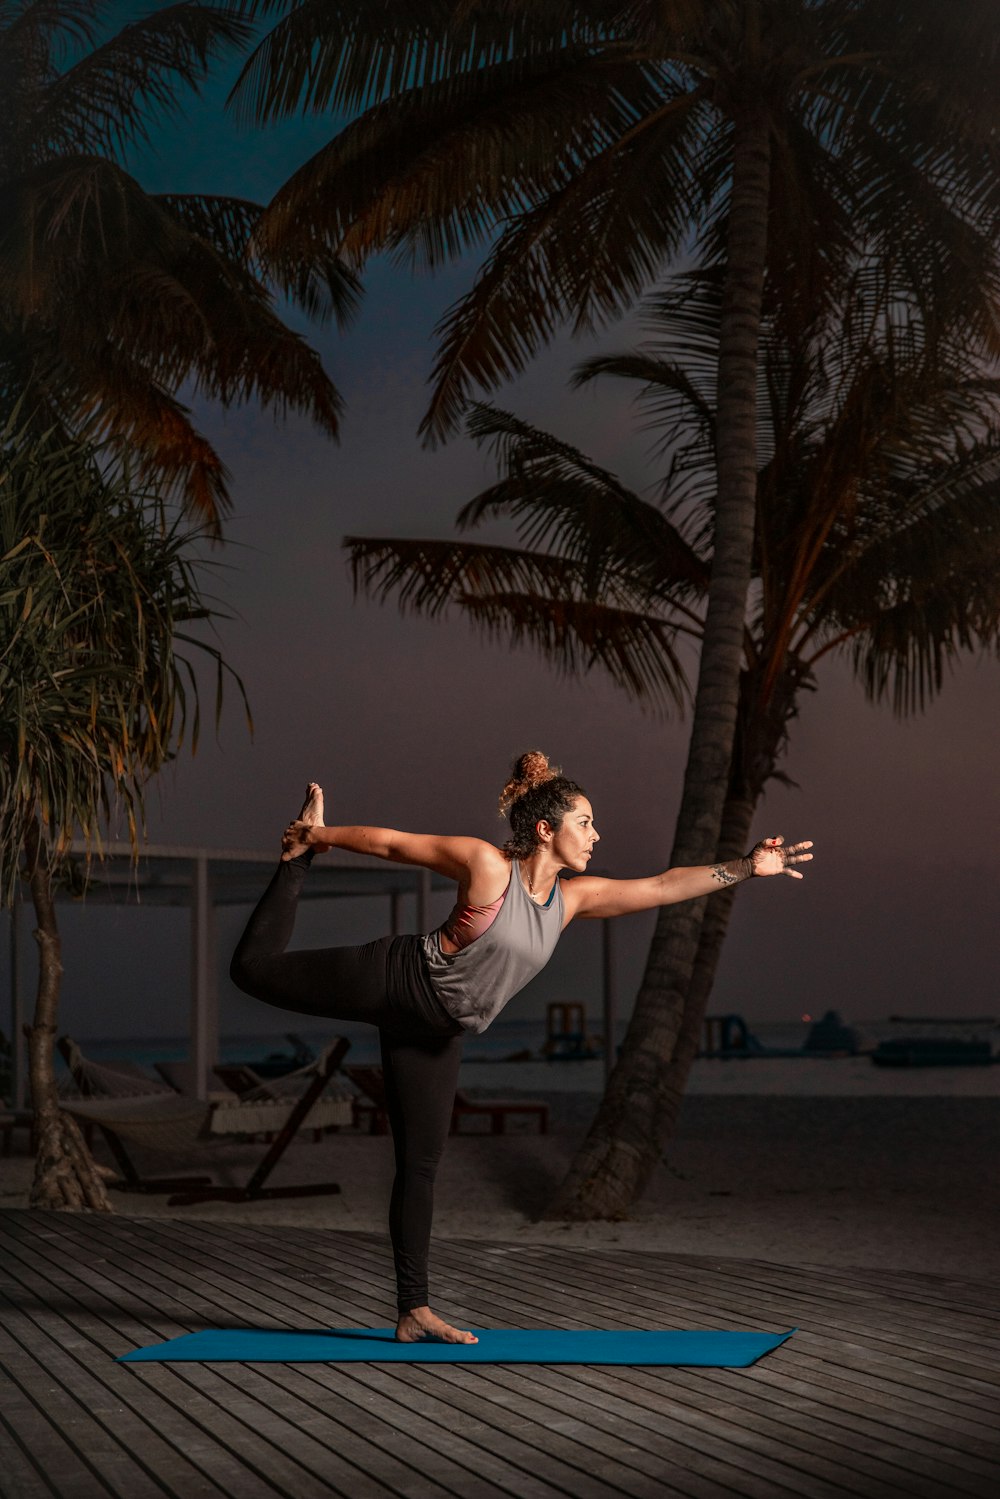 Una mujer haciendo yoga en una colchoneta frente a palmeras